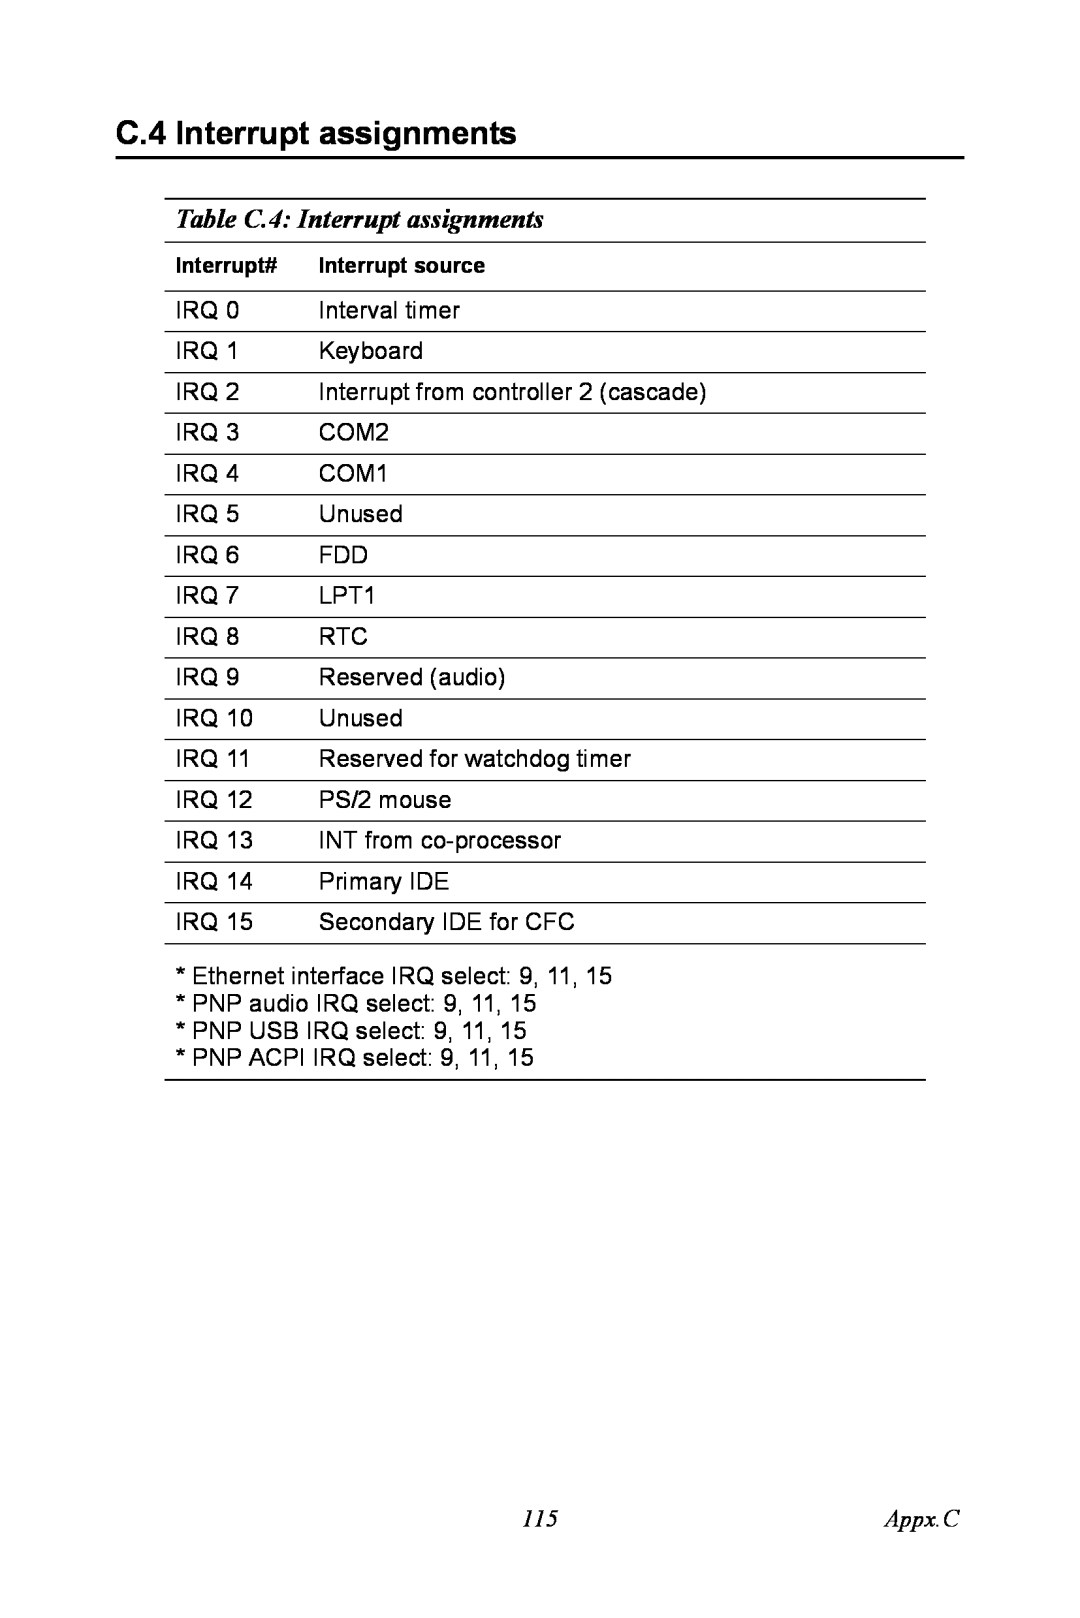 Advantech PCA-6774 user manual Table C.4 Interrupt assignments, Appx.C 